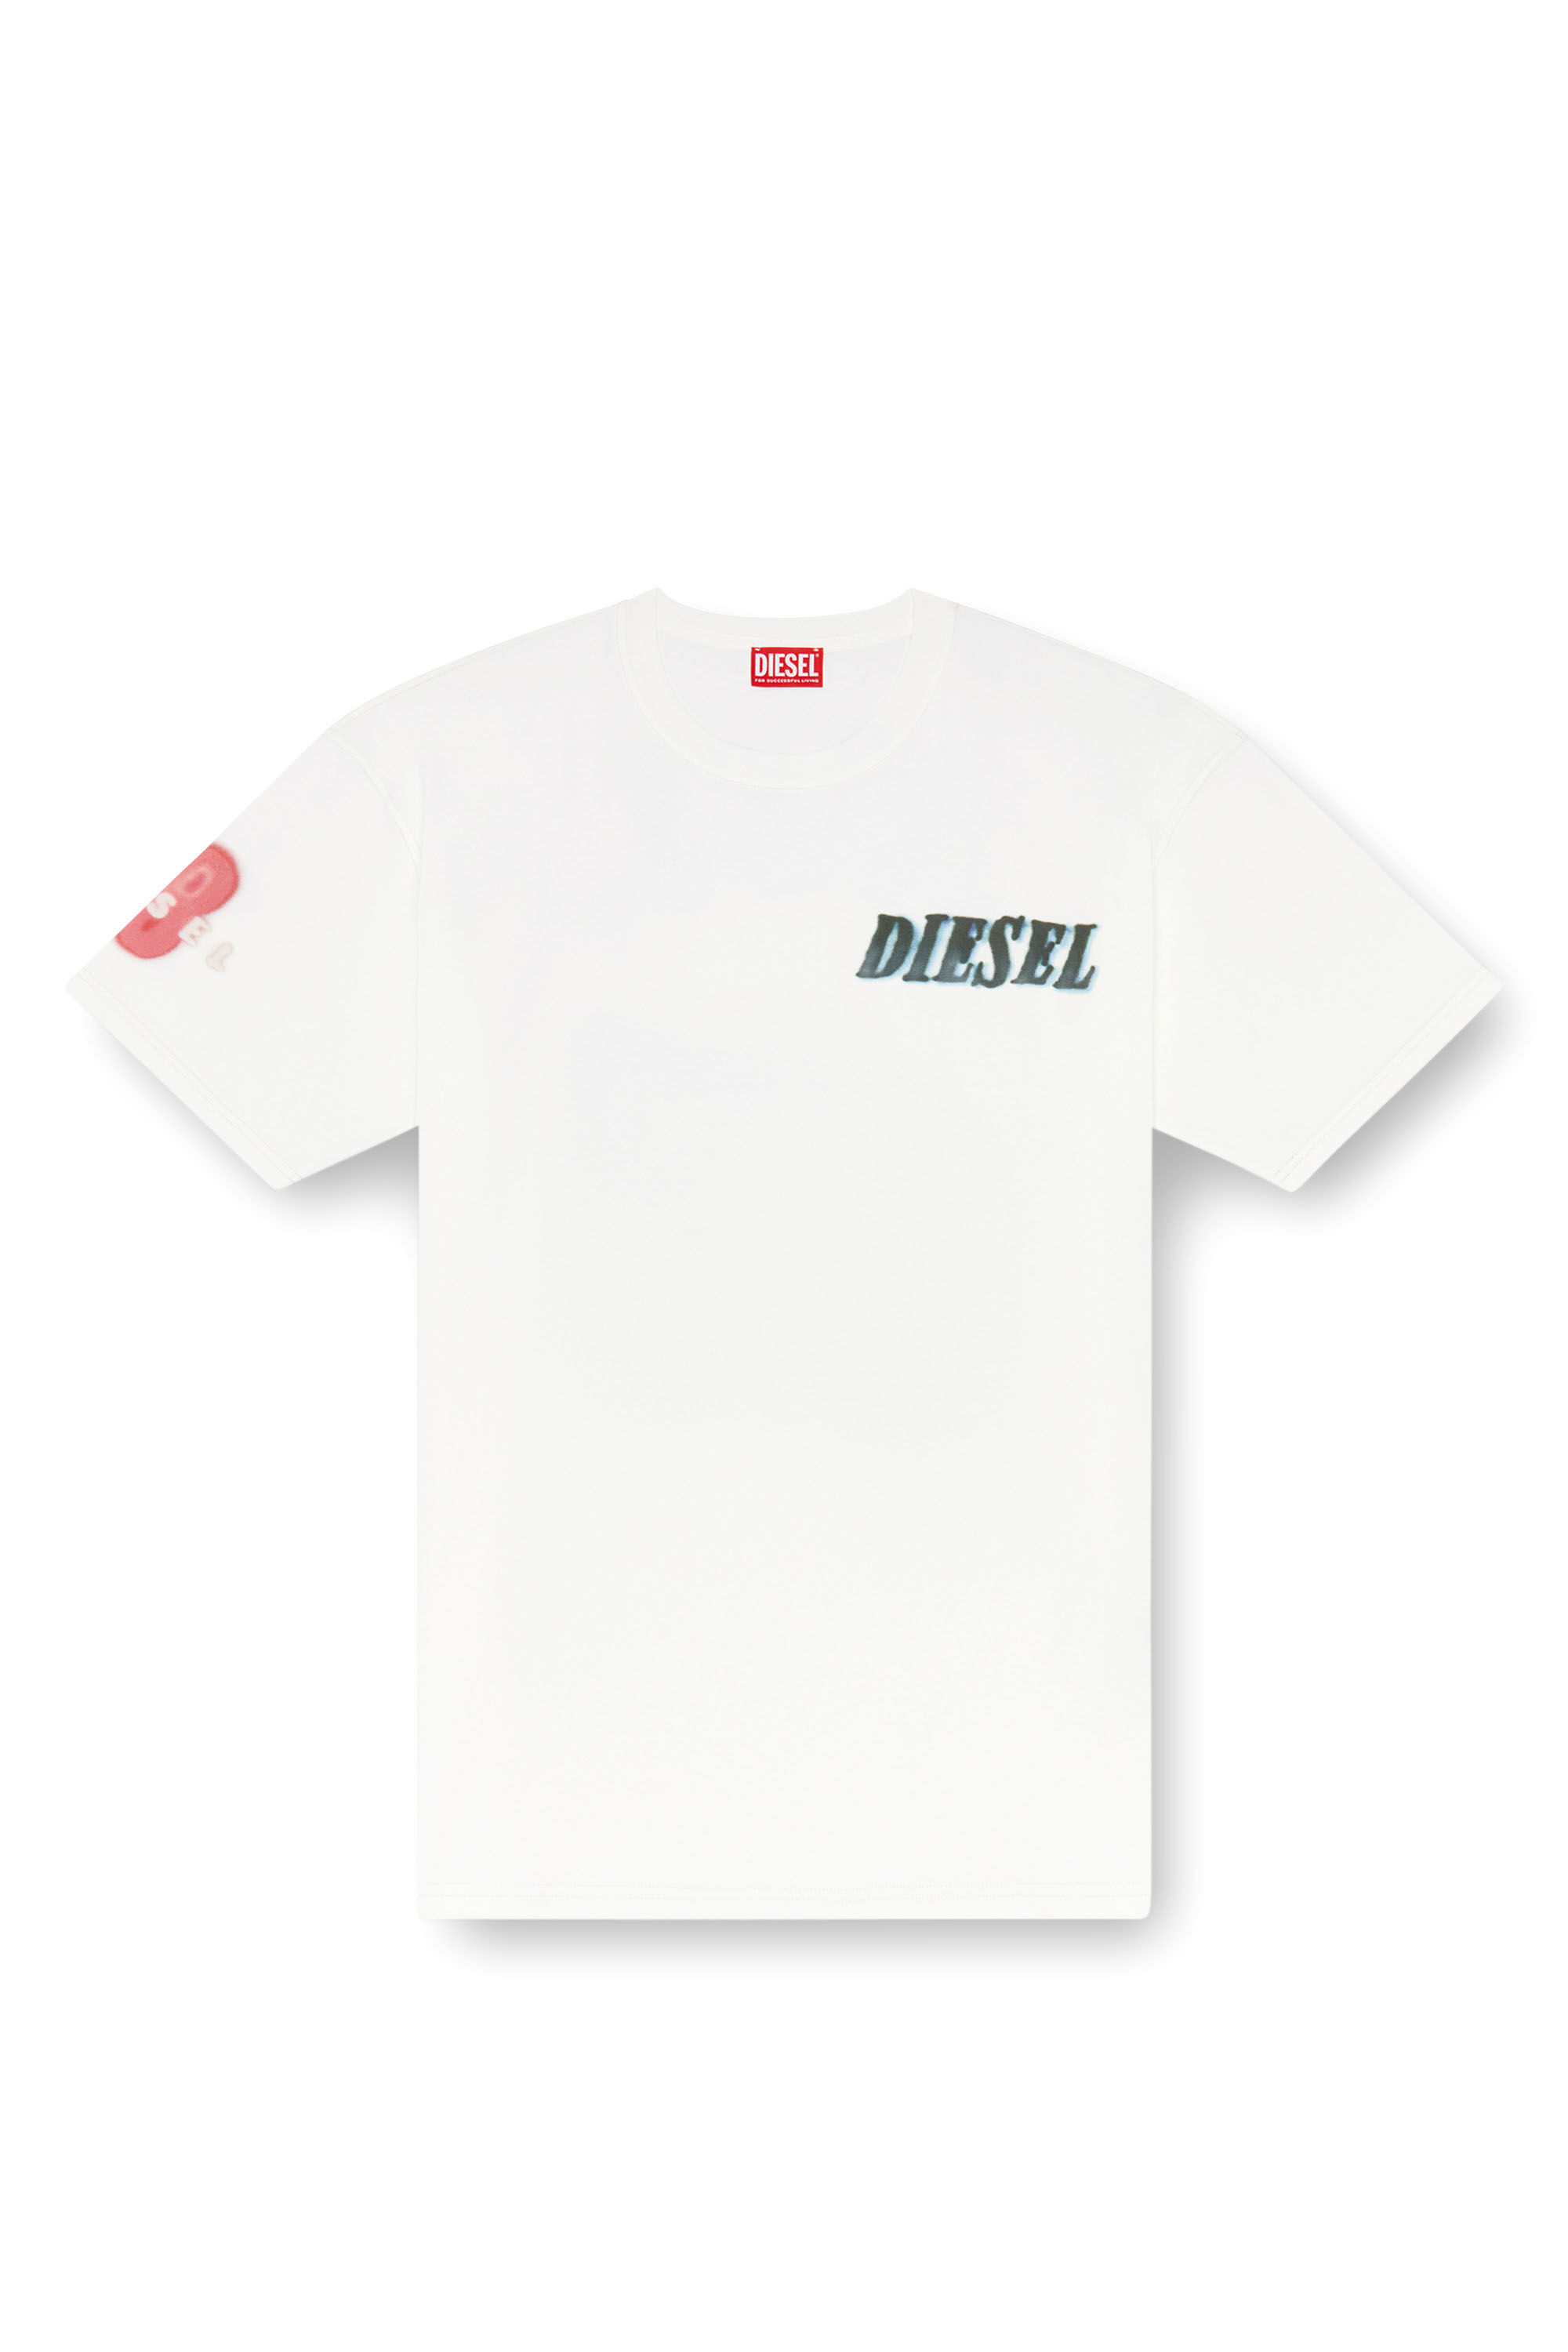 Diesel - T-BOXT-Q19, Homme T-shirt avec logo et imprimé pneu in Blanc - Image 2